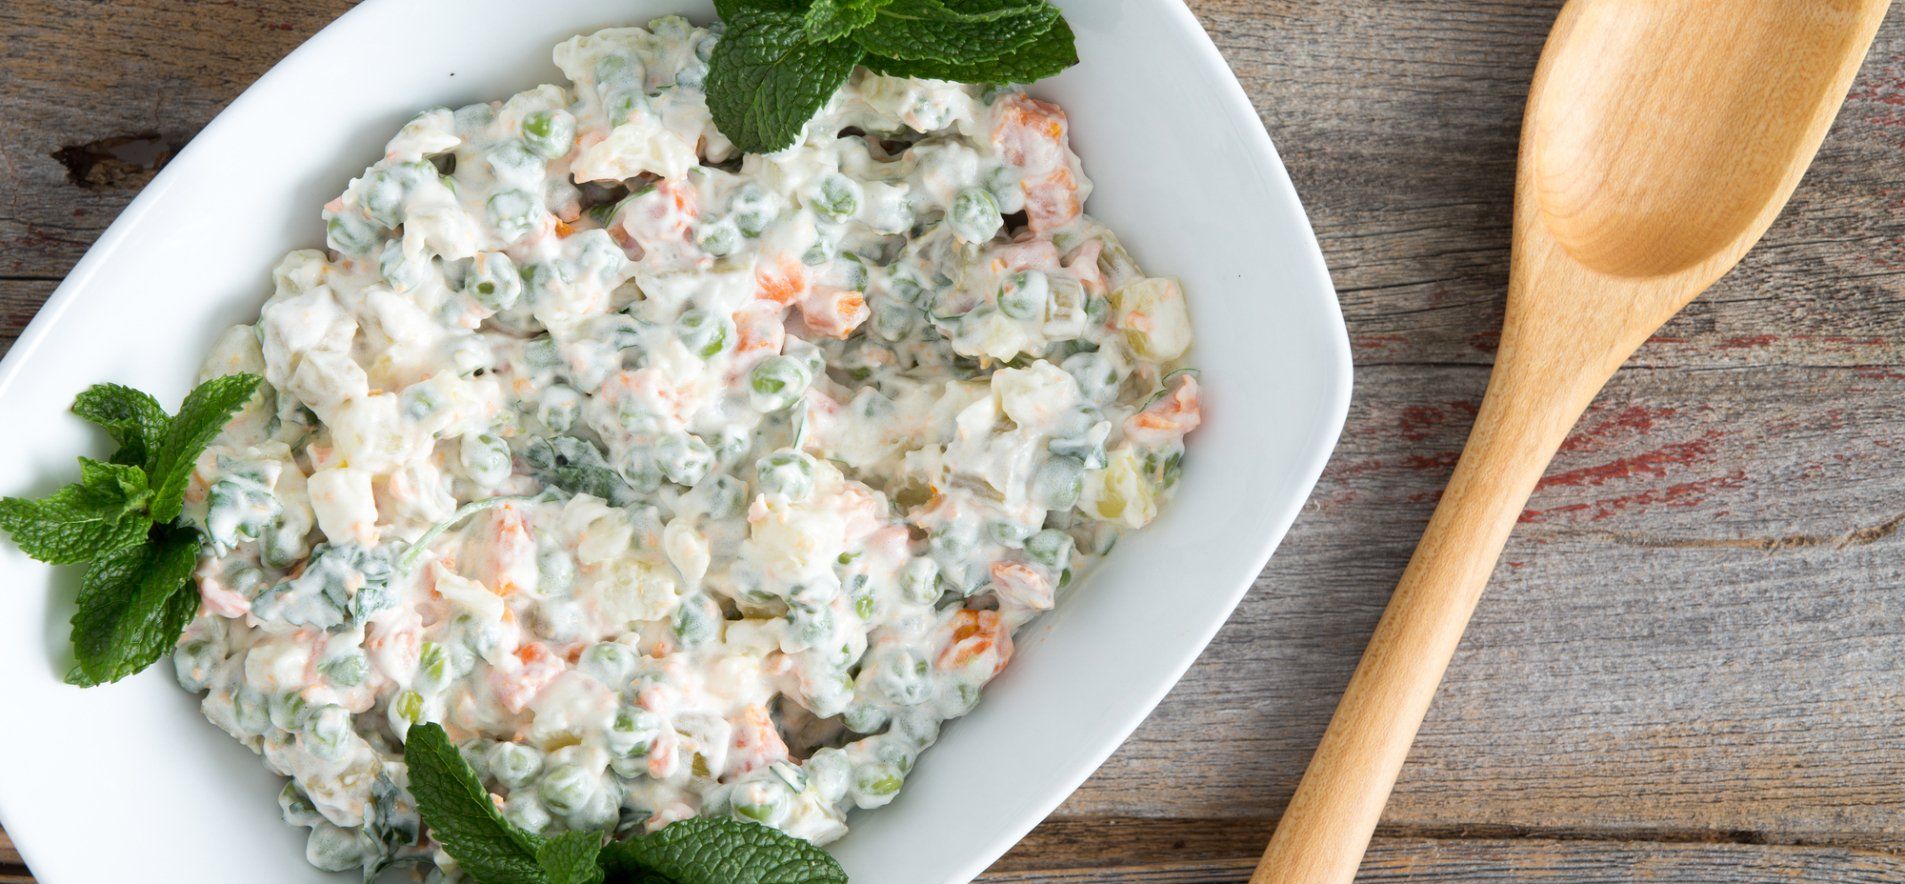 Оливье – рецепт на Новый год – приготовьте просто и быстро традиционный салат